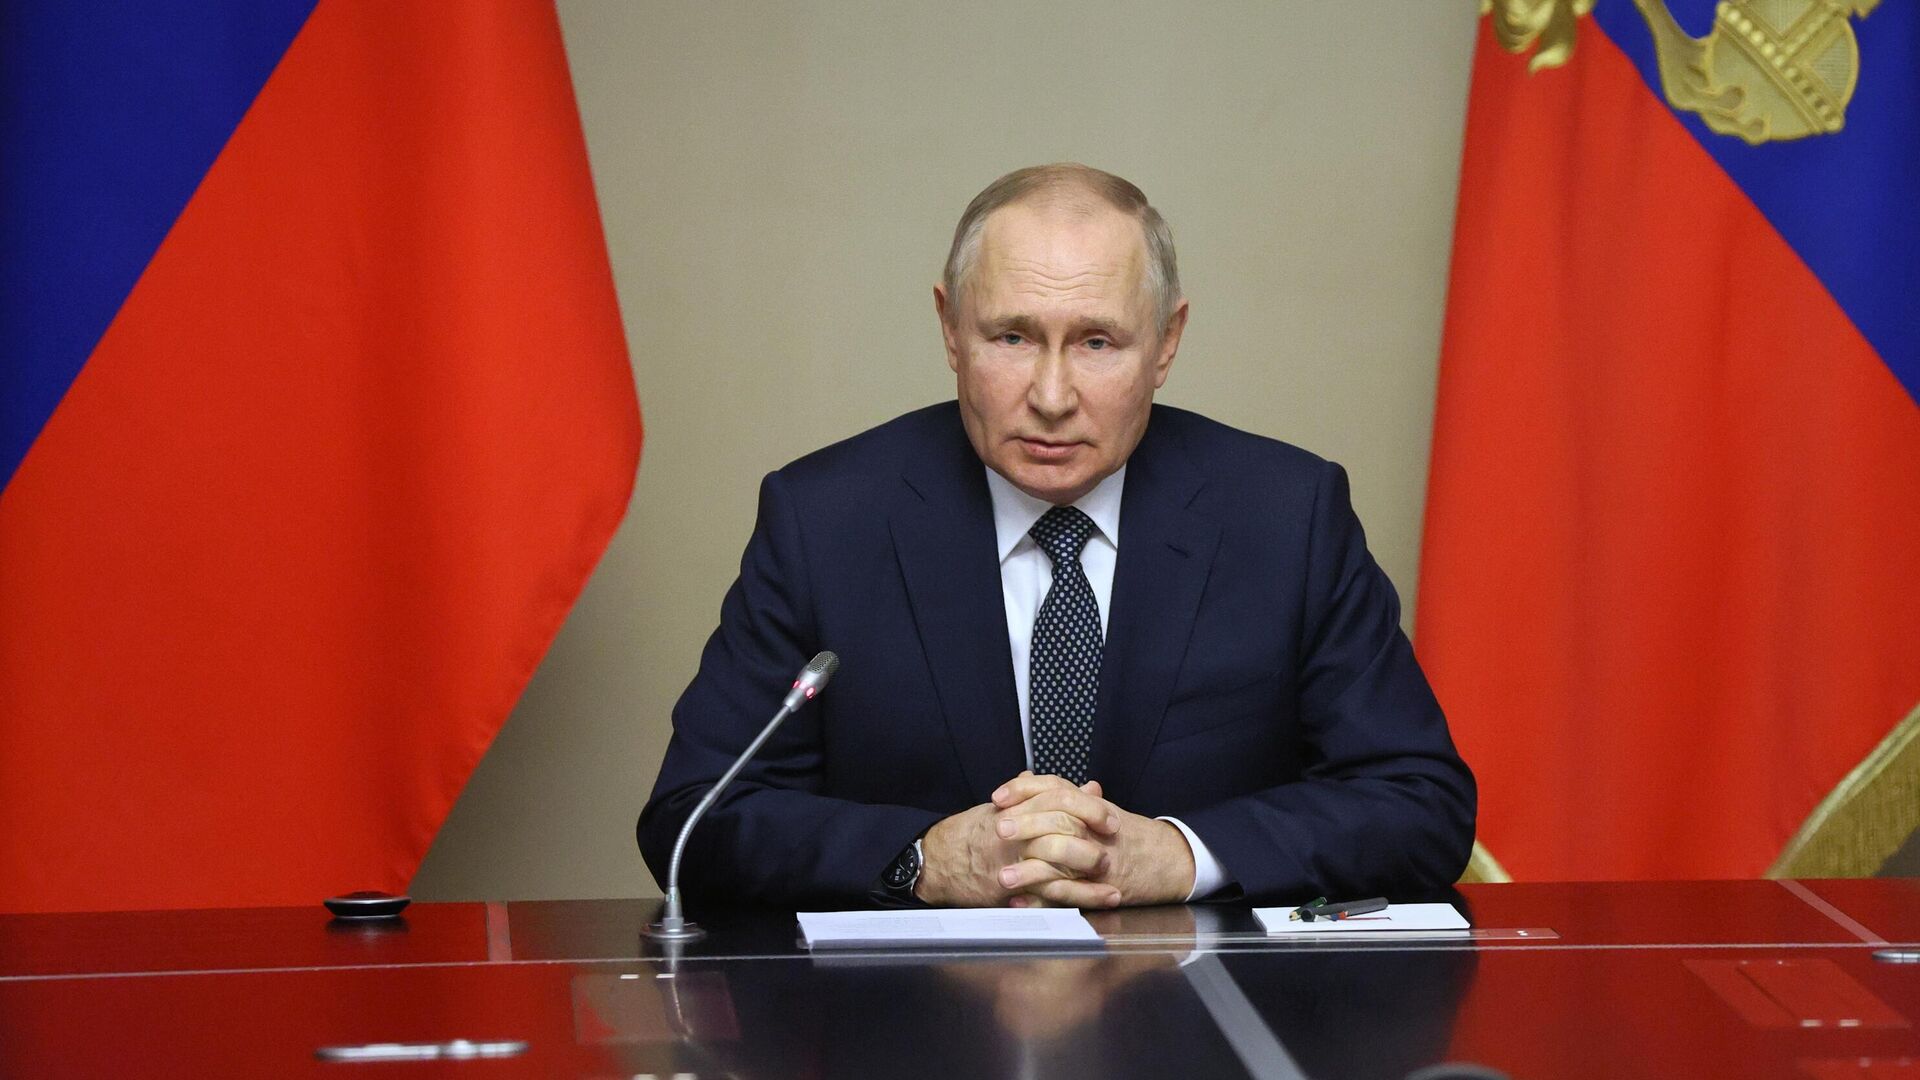 Путин поручил разработать допмеры поддержки детей в новых субъектах России